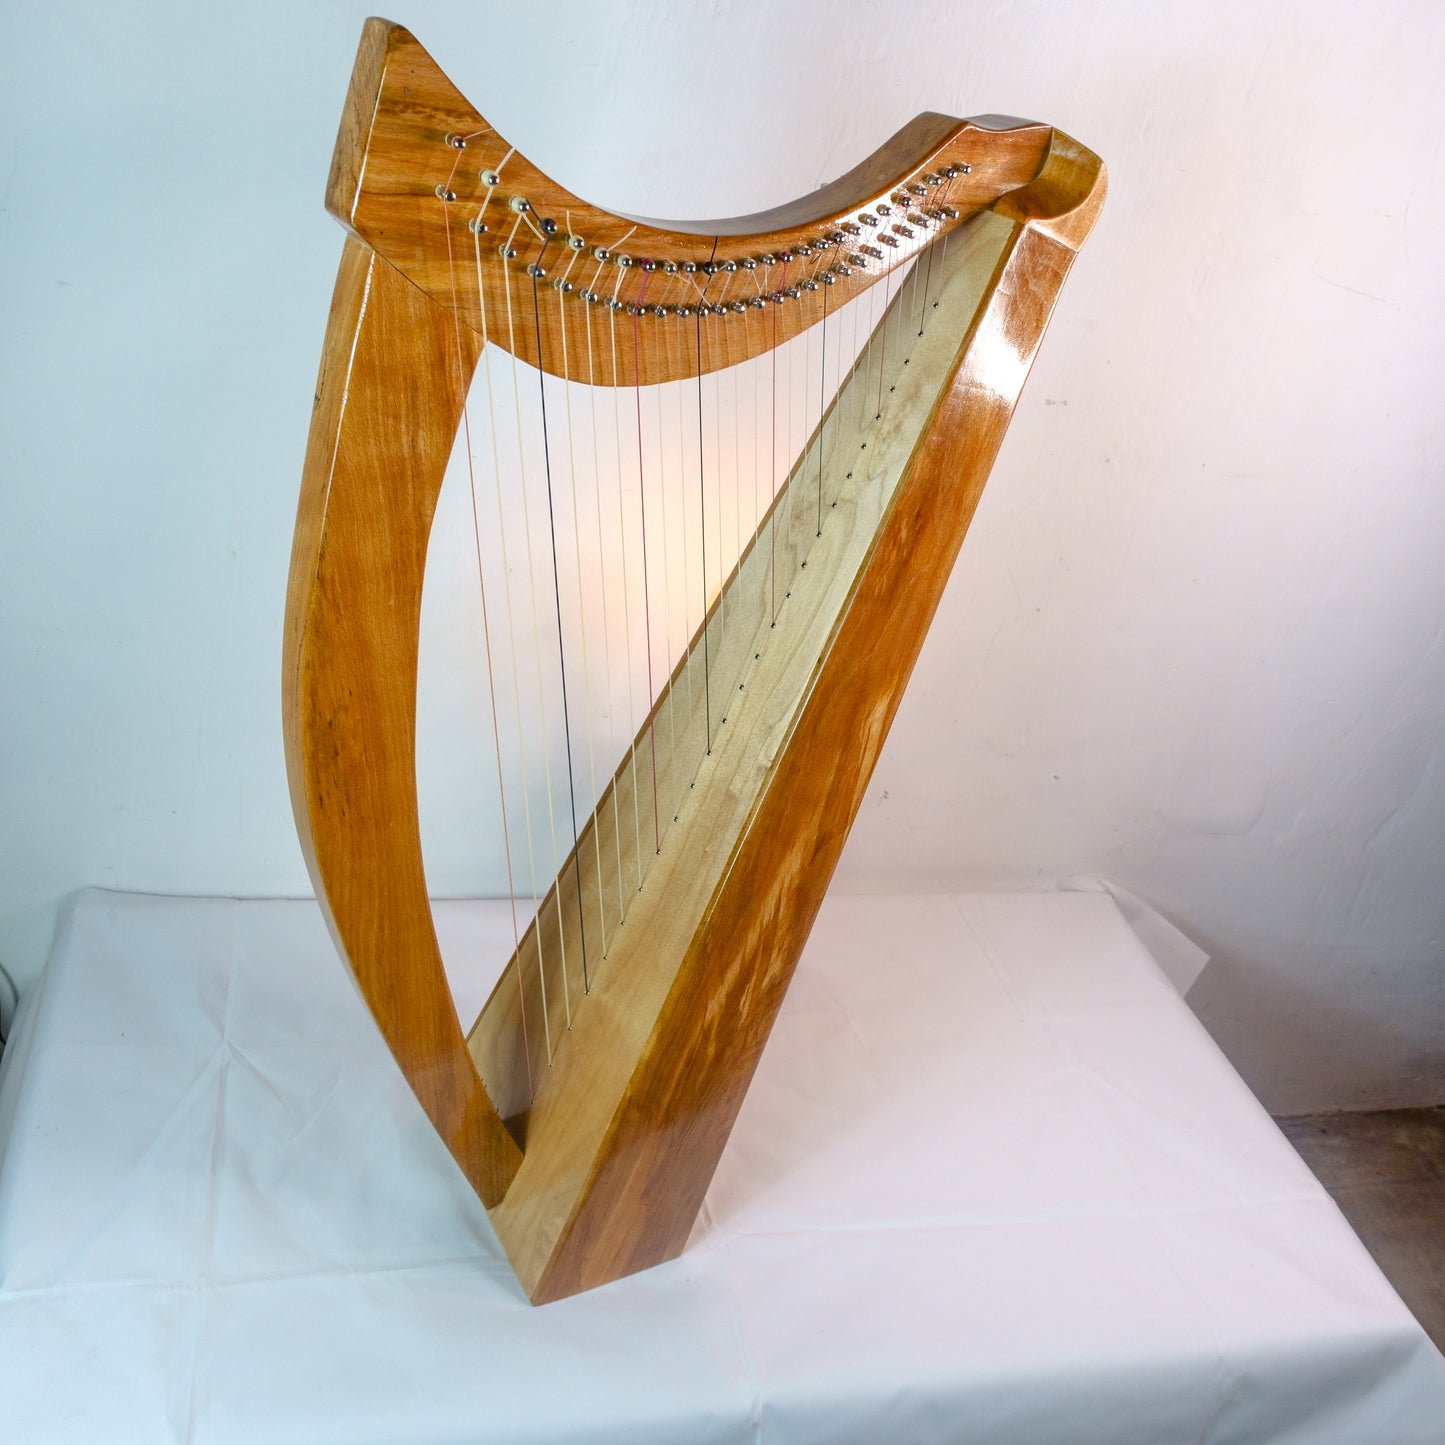 Lúbhaigh's Harp